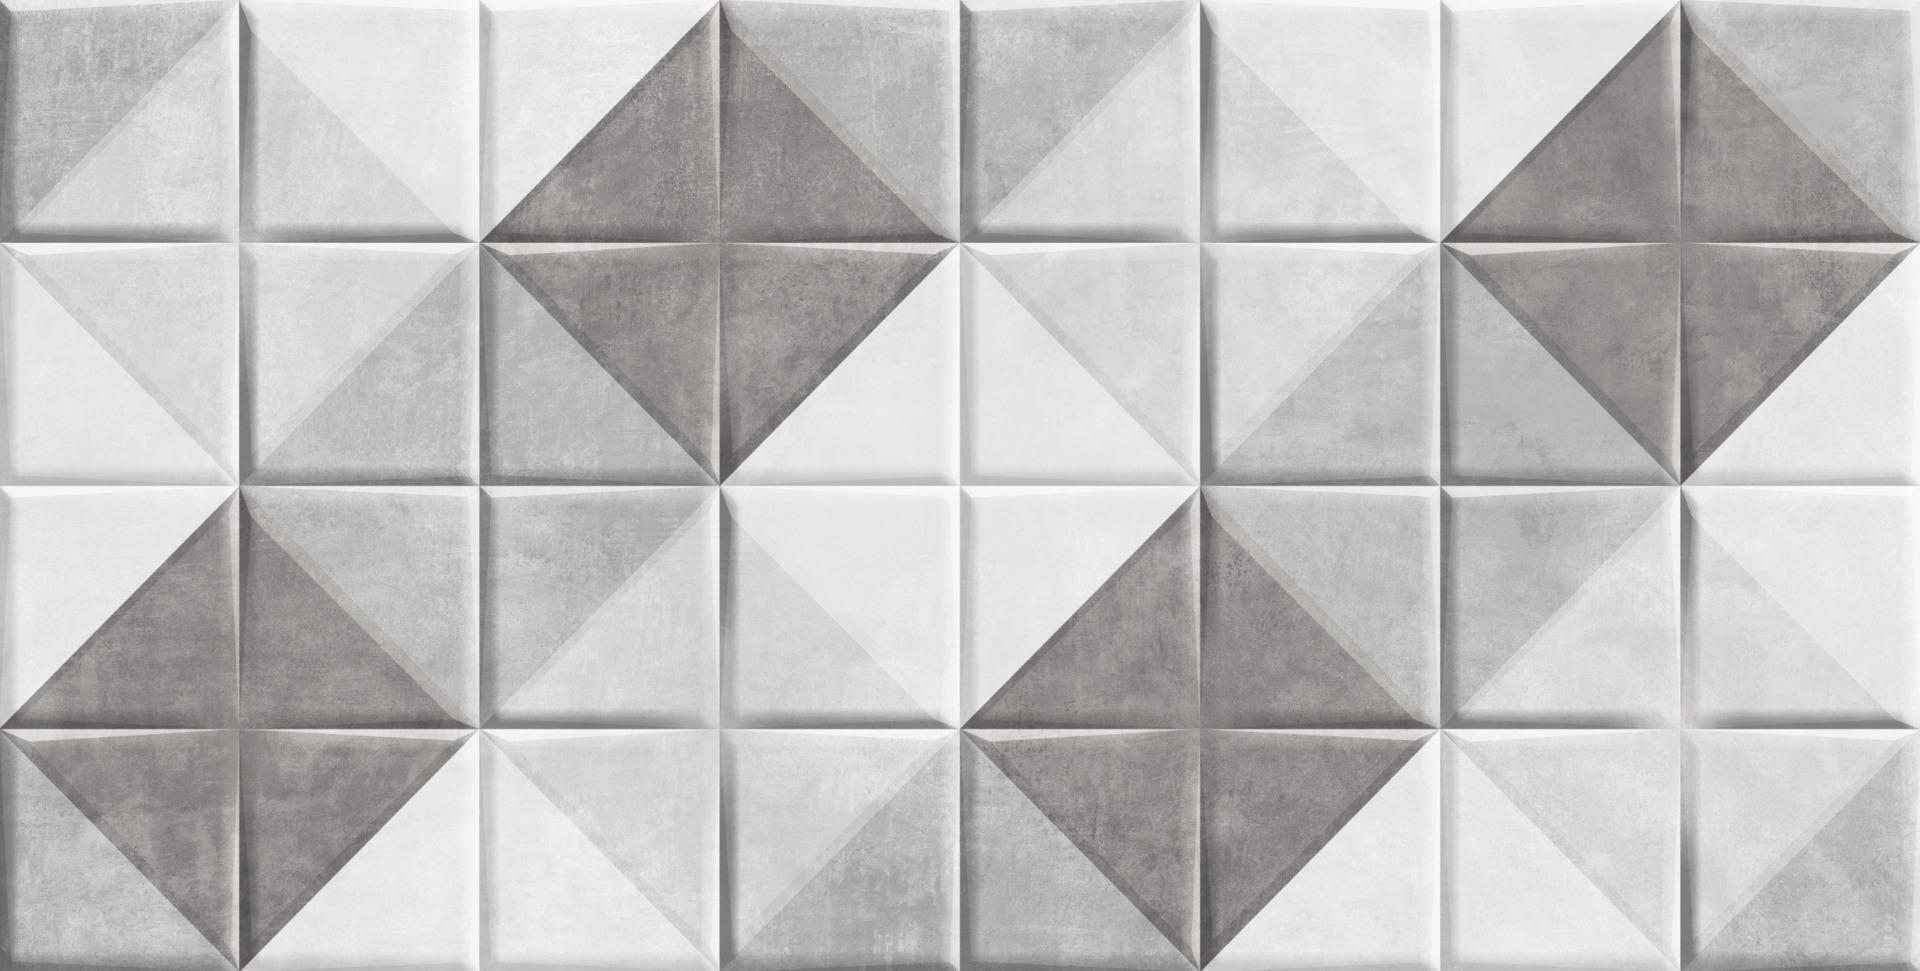 Floor Tiles for Bathroom Tiles, Living Room Tiles, Kitchen Tiles, Bedroom Tiles, Accent Tiles, Automotive Tiles, Bar/Restaurant, Commercial/Office